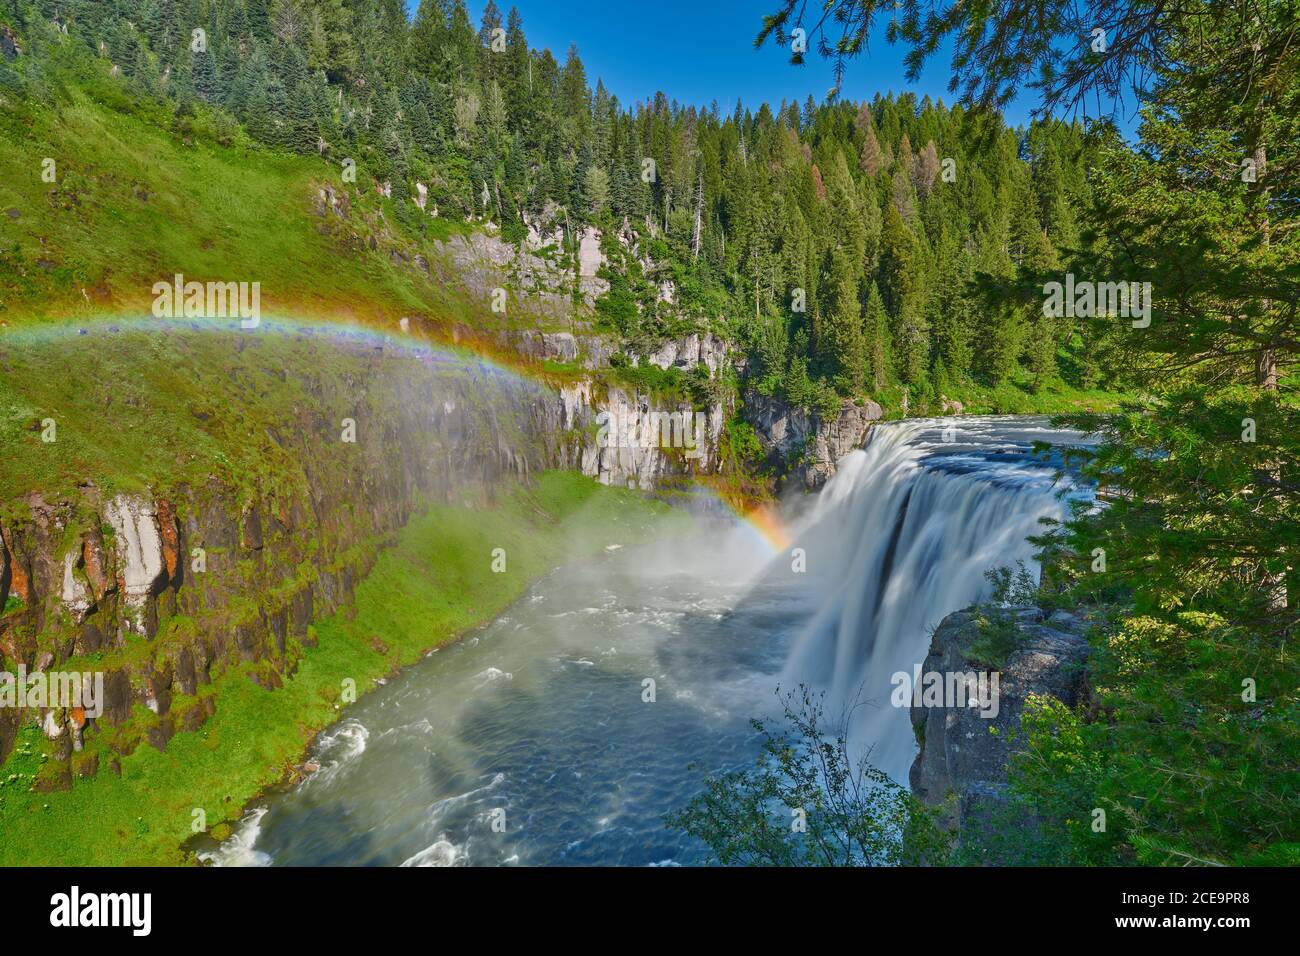 Panorama of Upper Mesa Falls near Ashton, Idaho Stock Photo